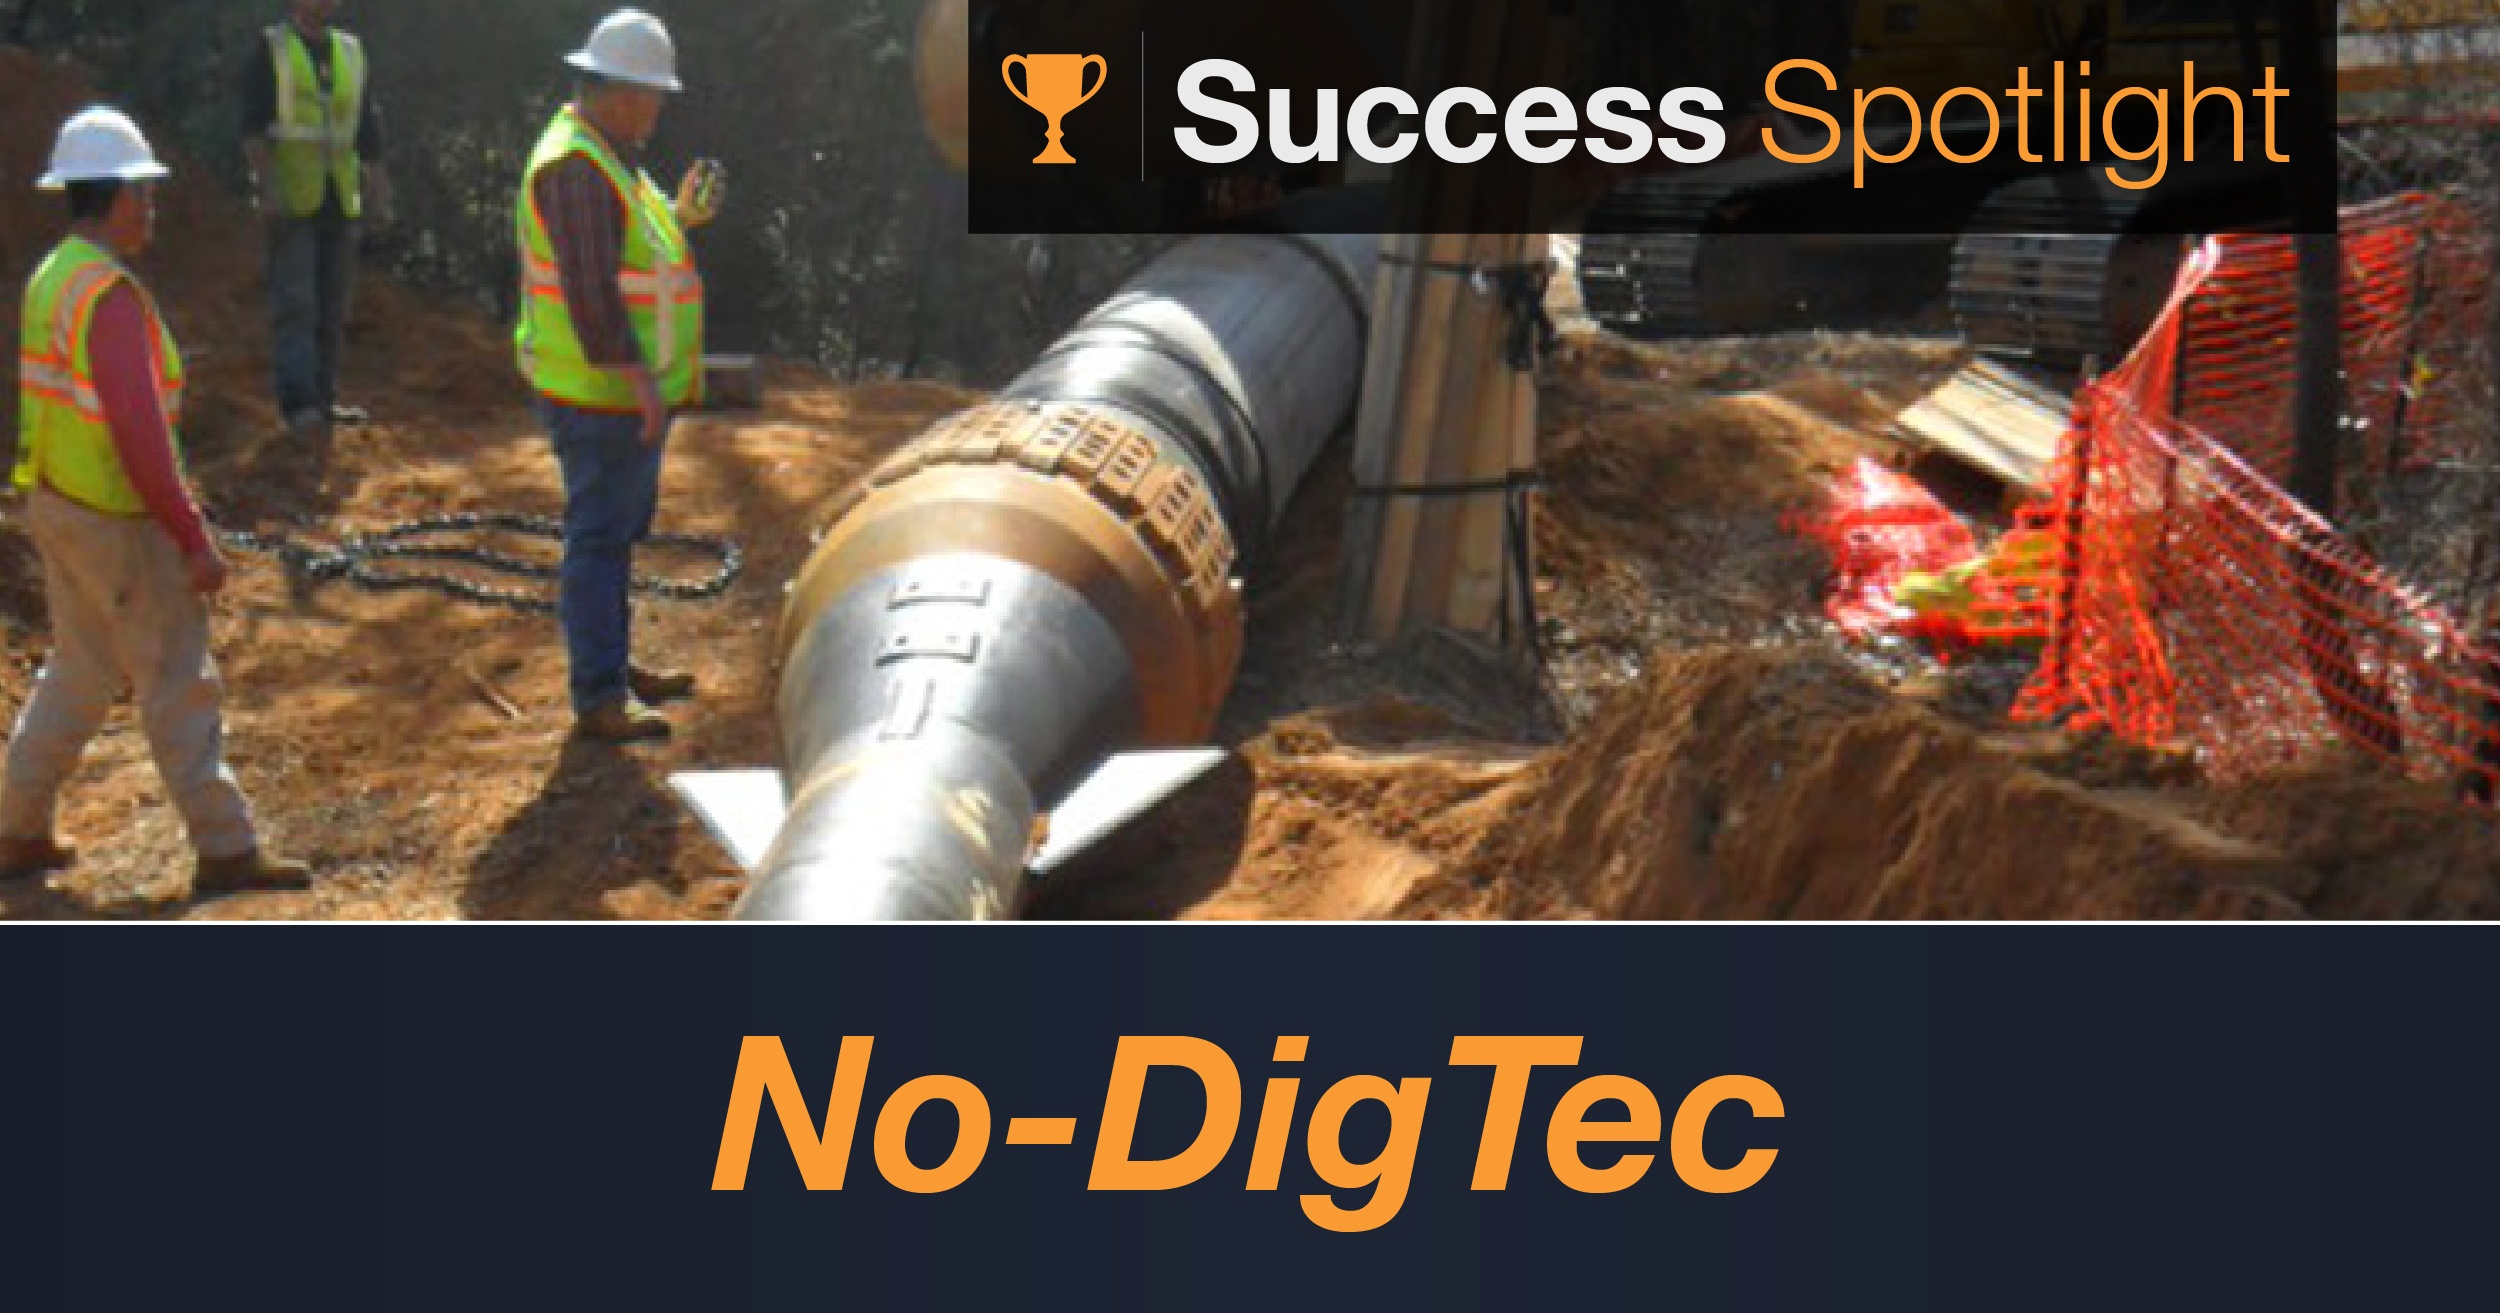 Success Spotlight: No-Dig Tec